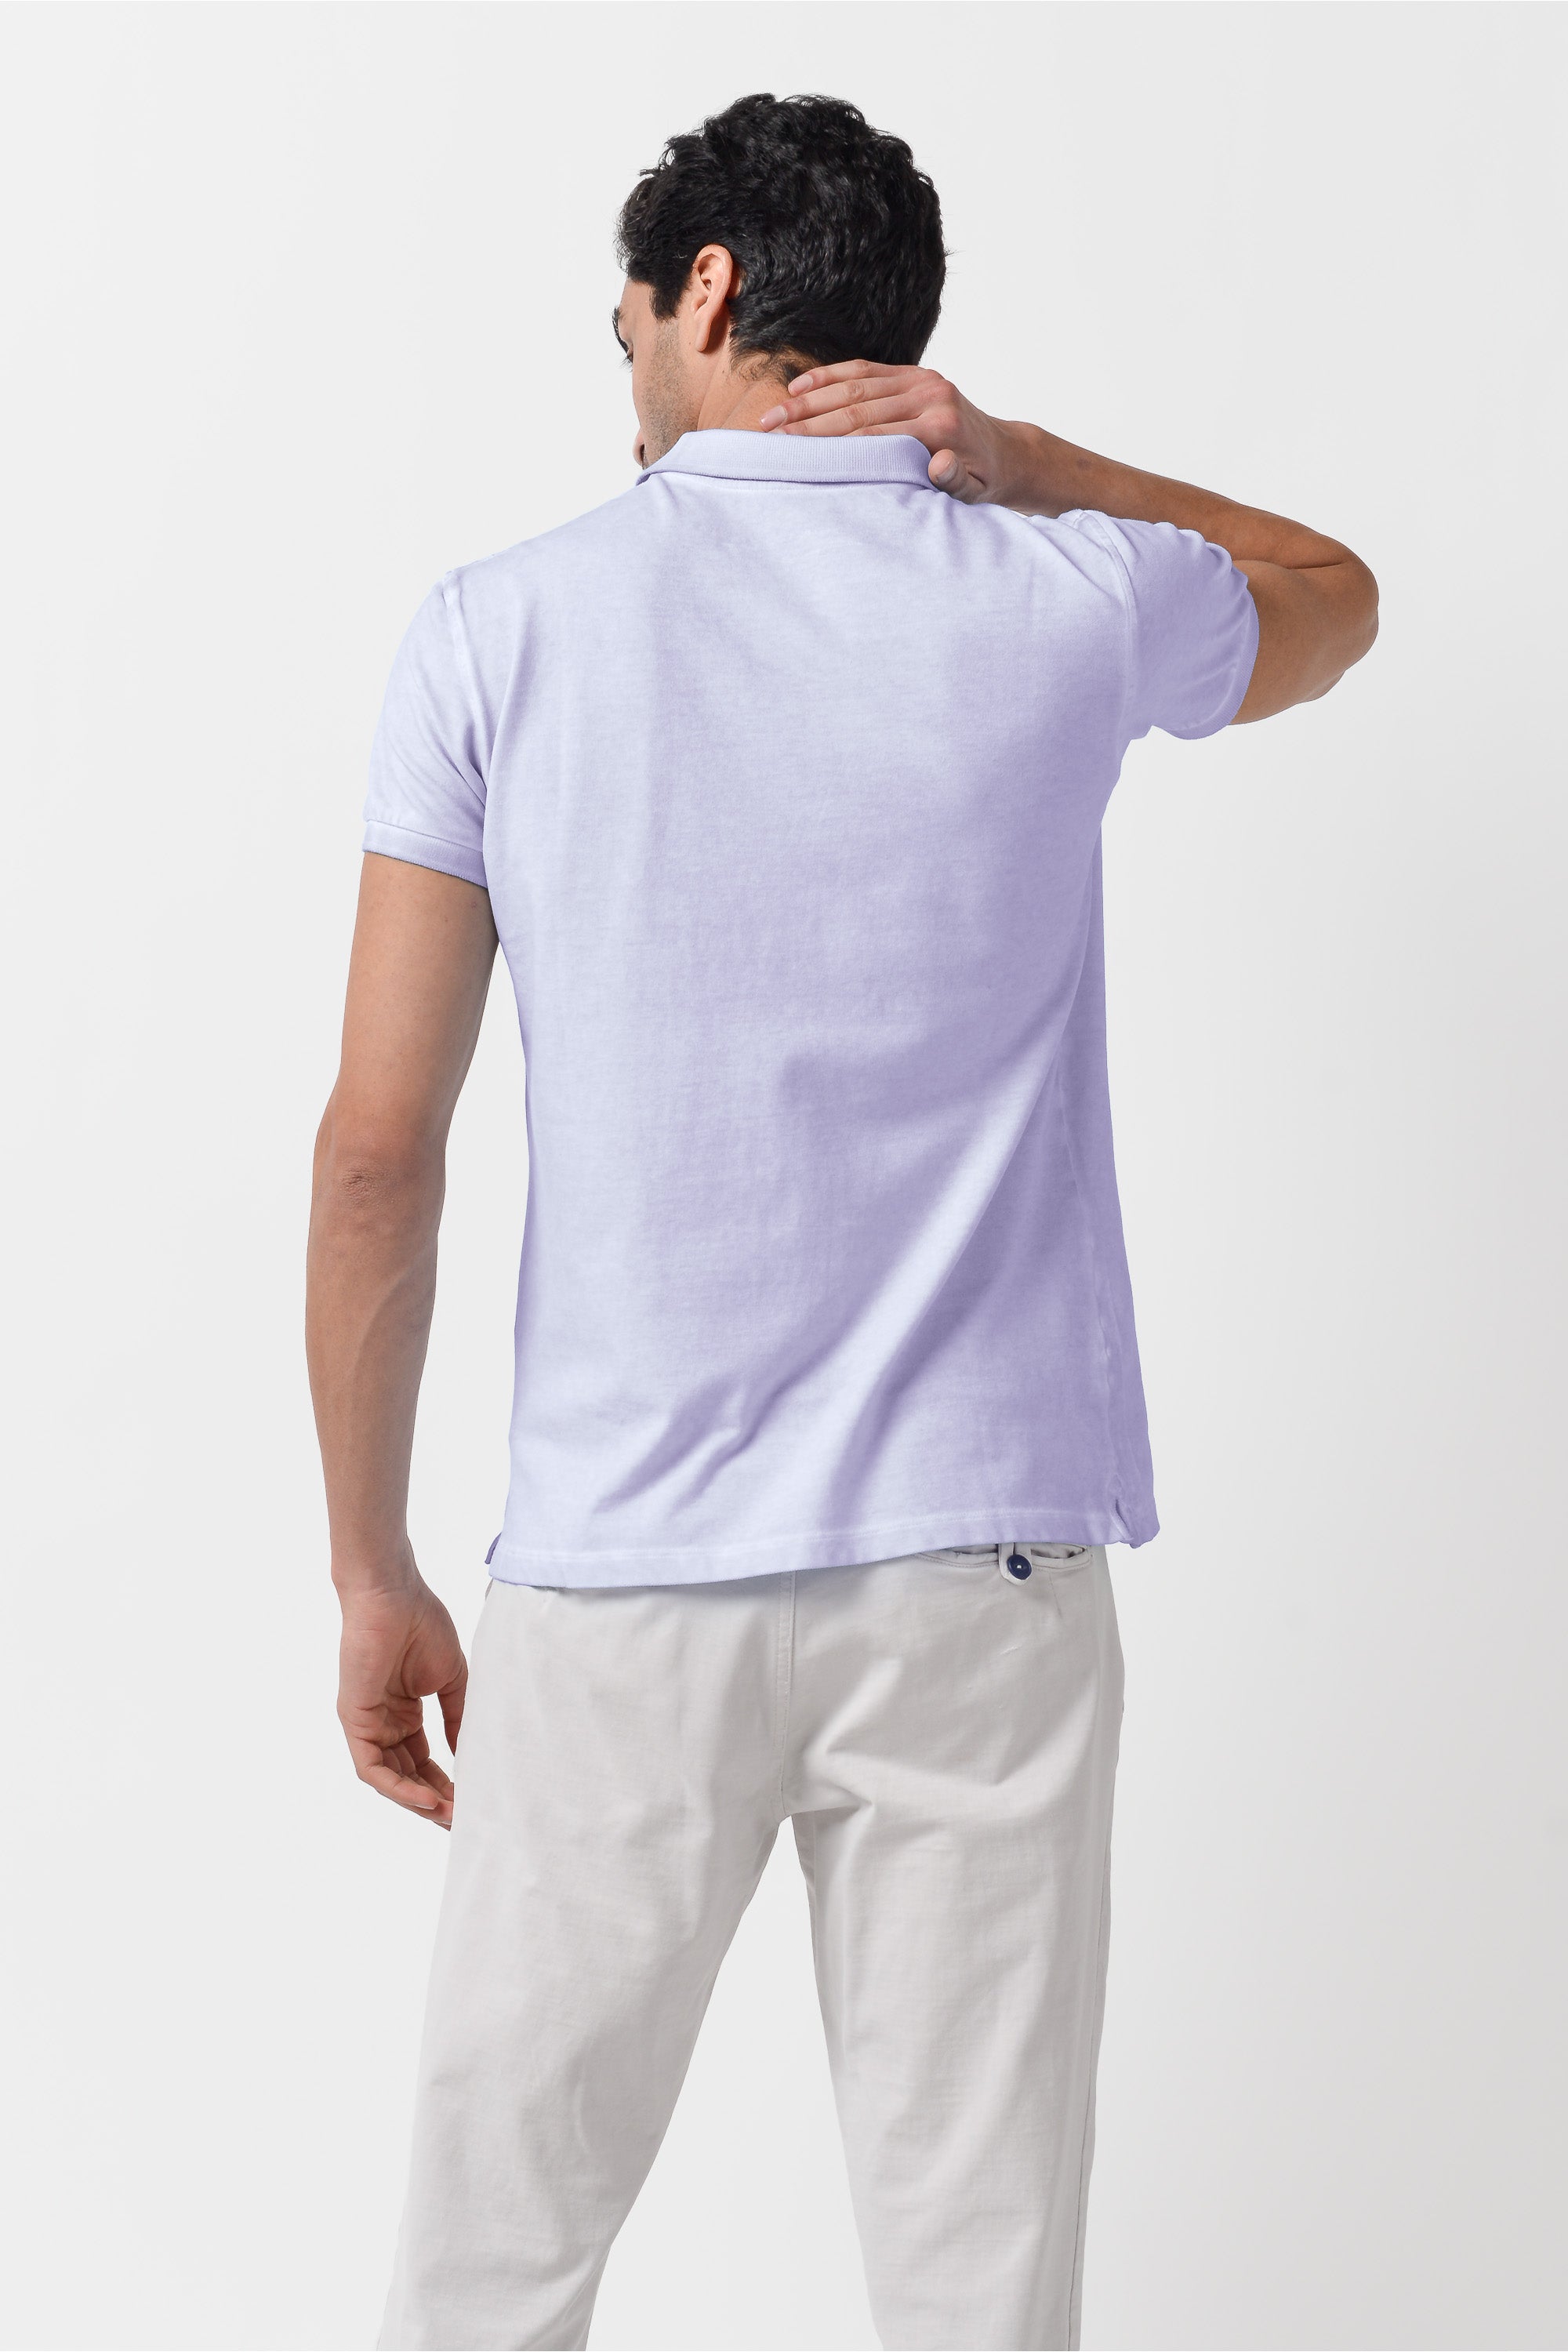 Club Polo Shirt - Lilac